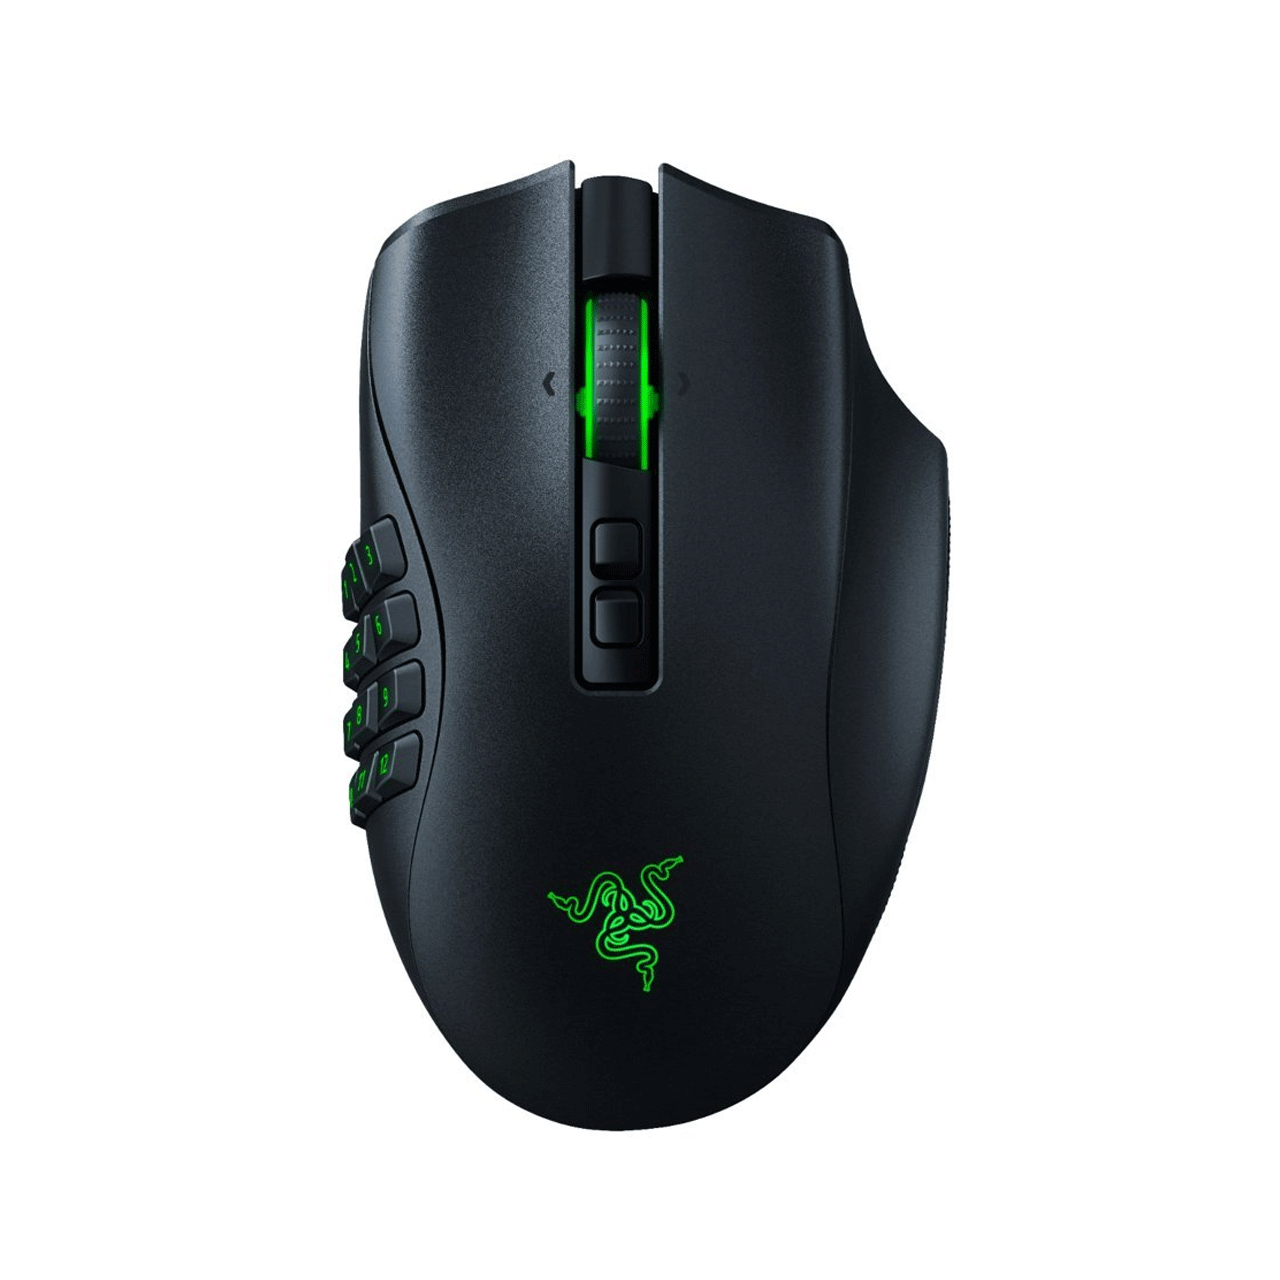 Razer--Naga-Pro-Wireless-Gaming-Mouse